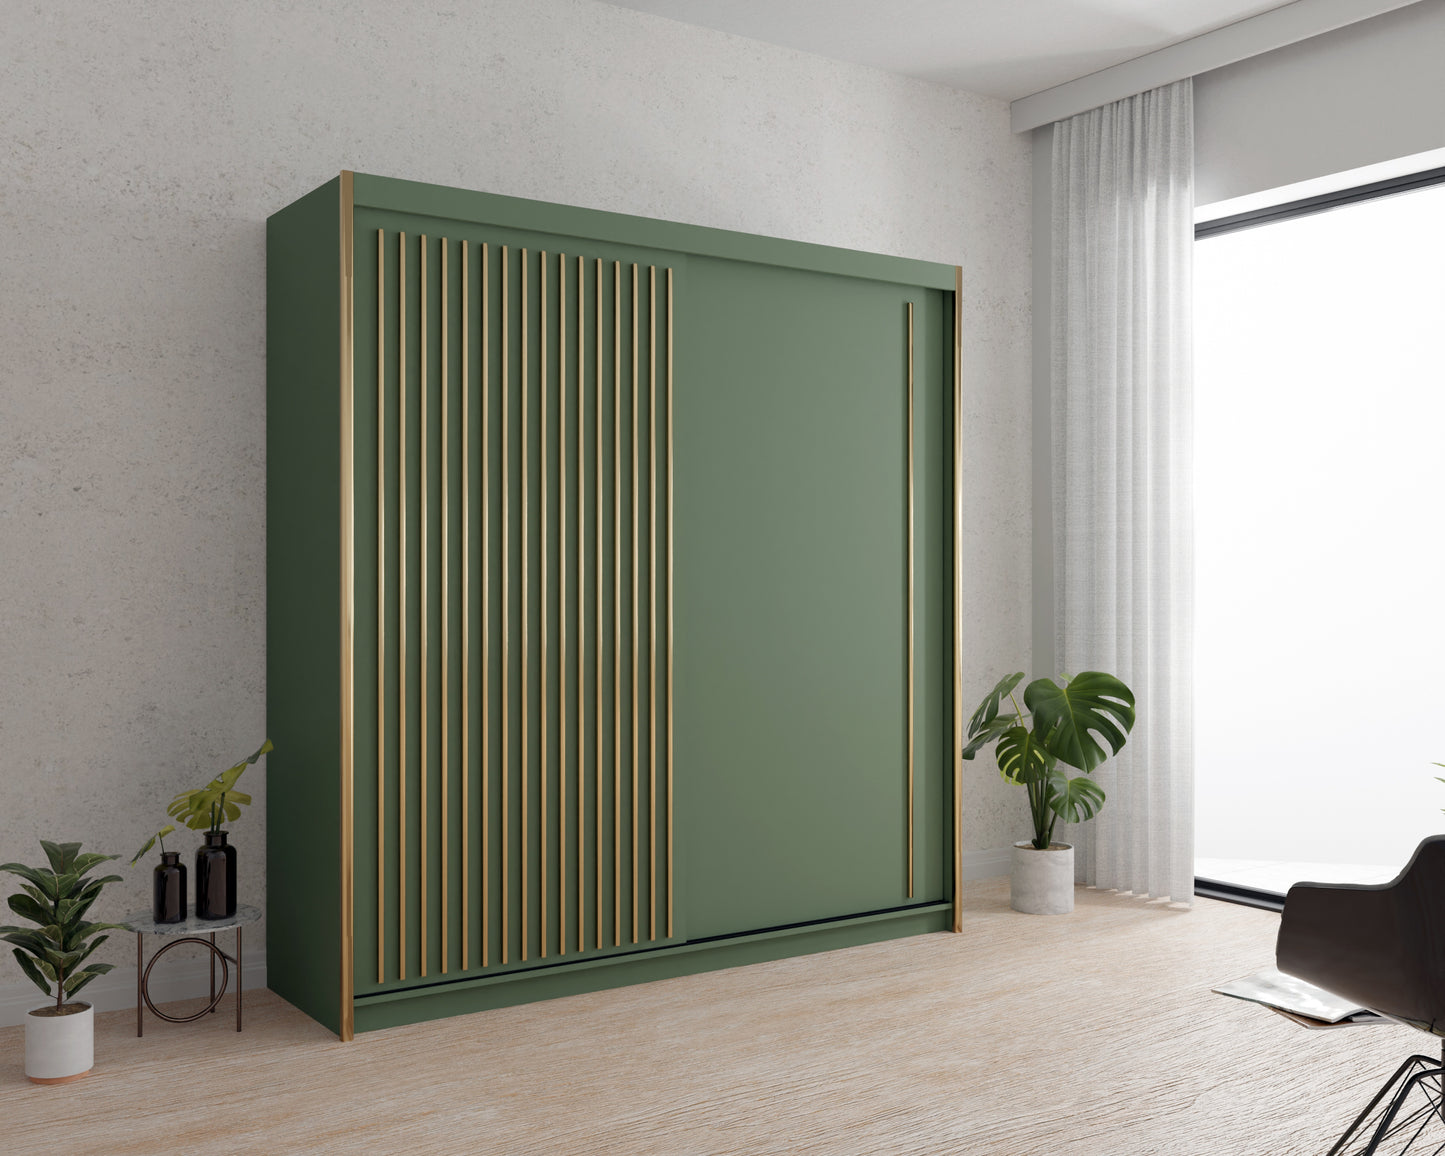 Zdjęcie przedstawiające przykładową aranżację nowoczesnej zielonej szafy przesuwnej do salonu Artist. Nowoczesna, zielona szafa przesuwna na ubrania Artist została ozdobiona lamelkami w kolorze złotym, a takie połączenie daje efektowny efekt